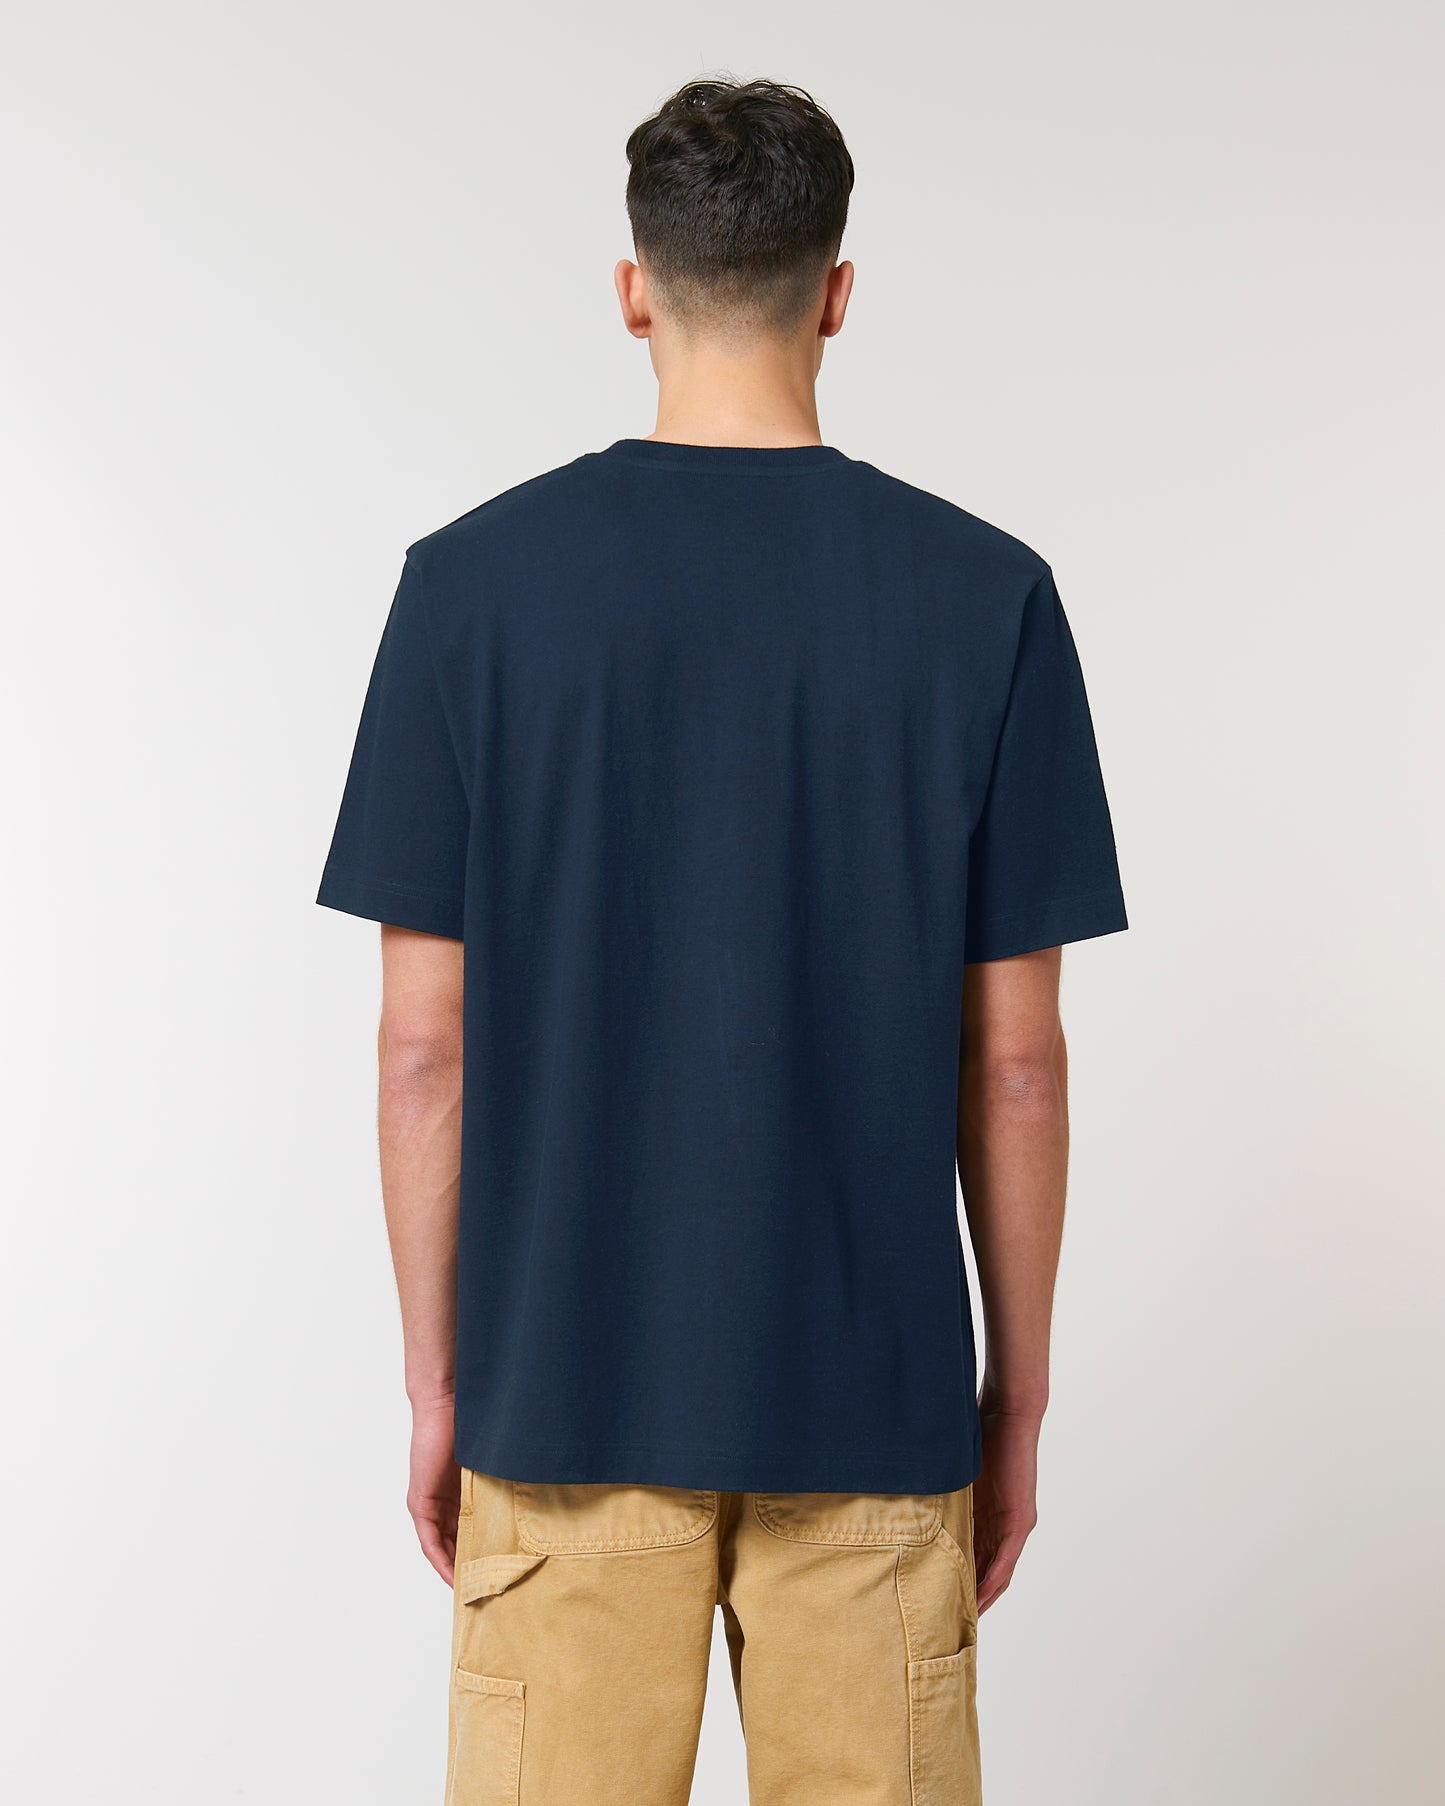 FREESTYLER | T-shirt épais oversize en coton bio